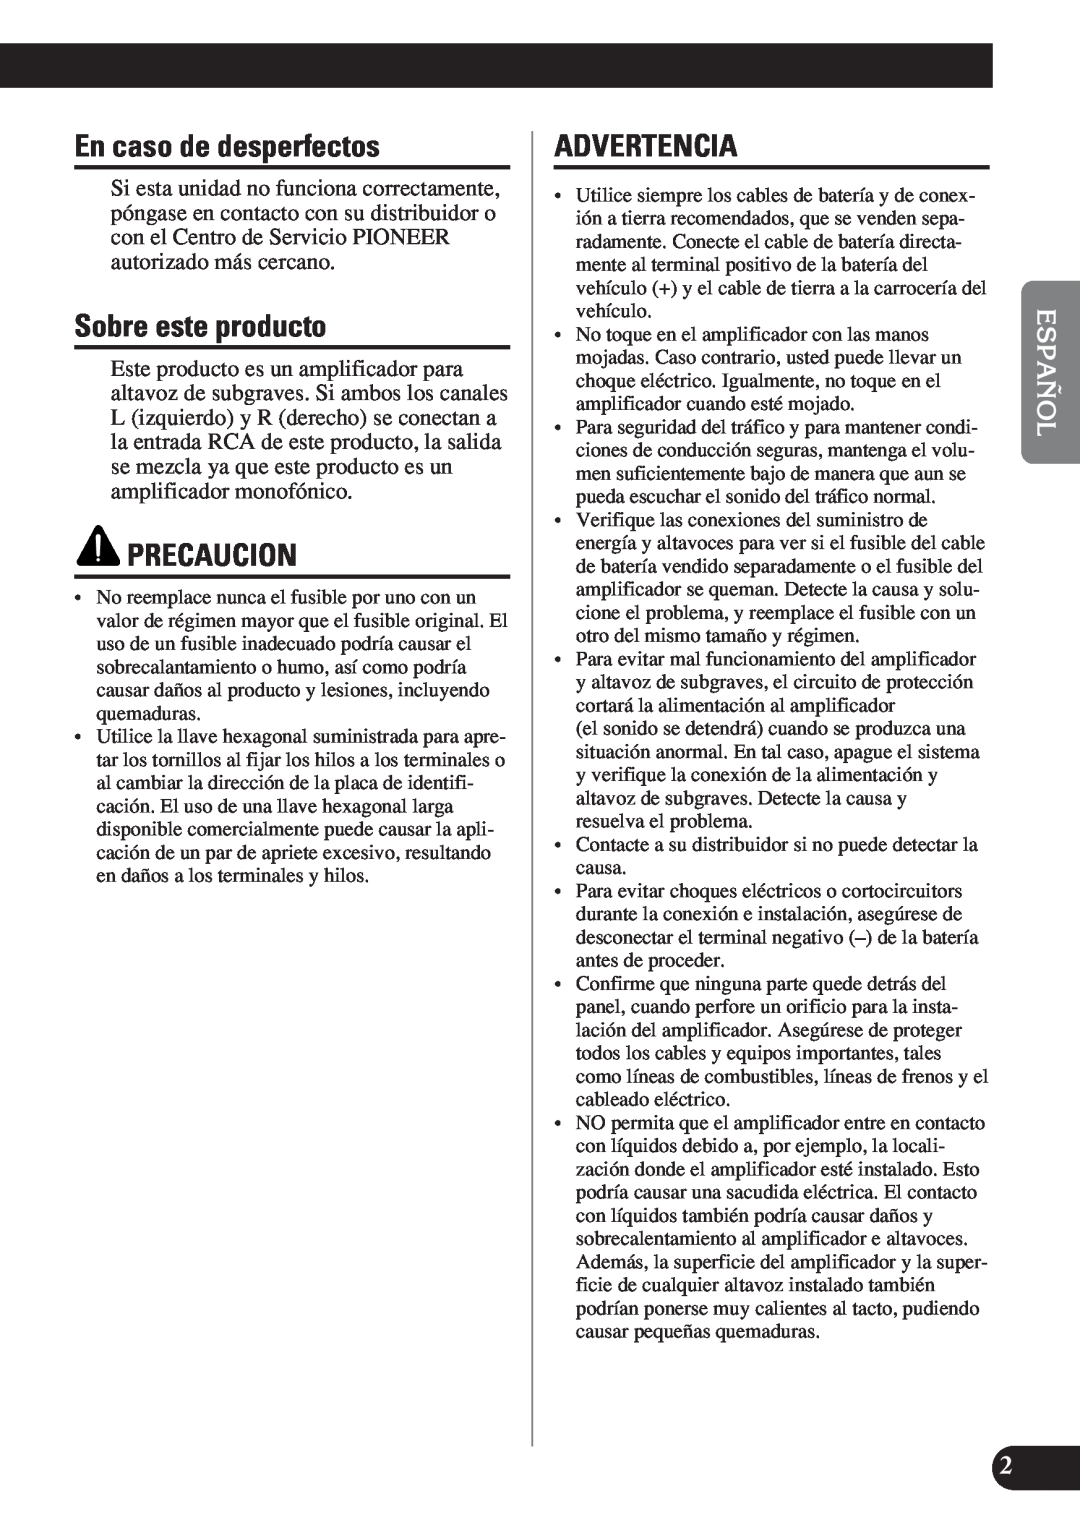 Pioneer D1200SPL owner manual En caso de desperfectos, Sobre este producto, Precaucion, Advertencia 